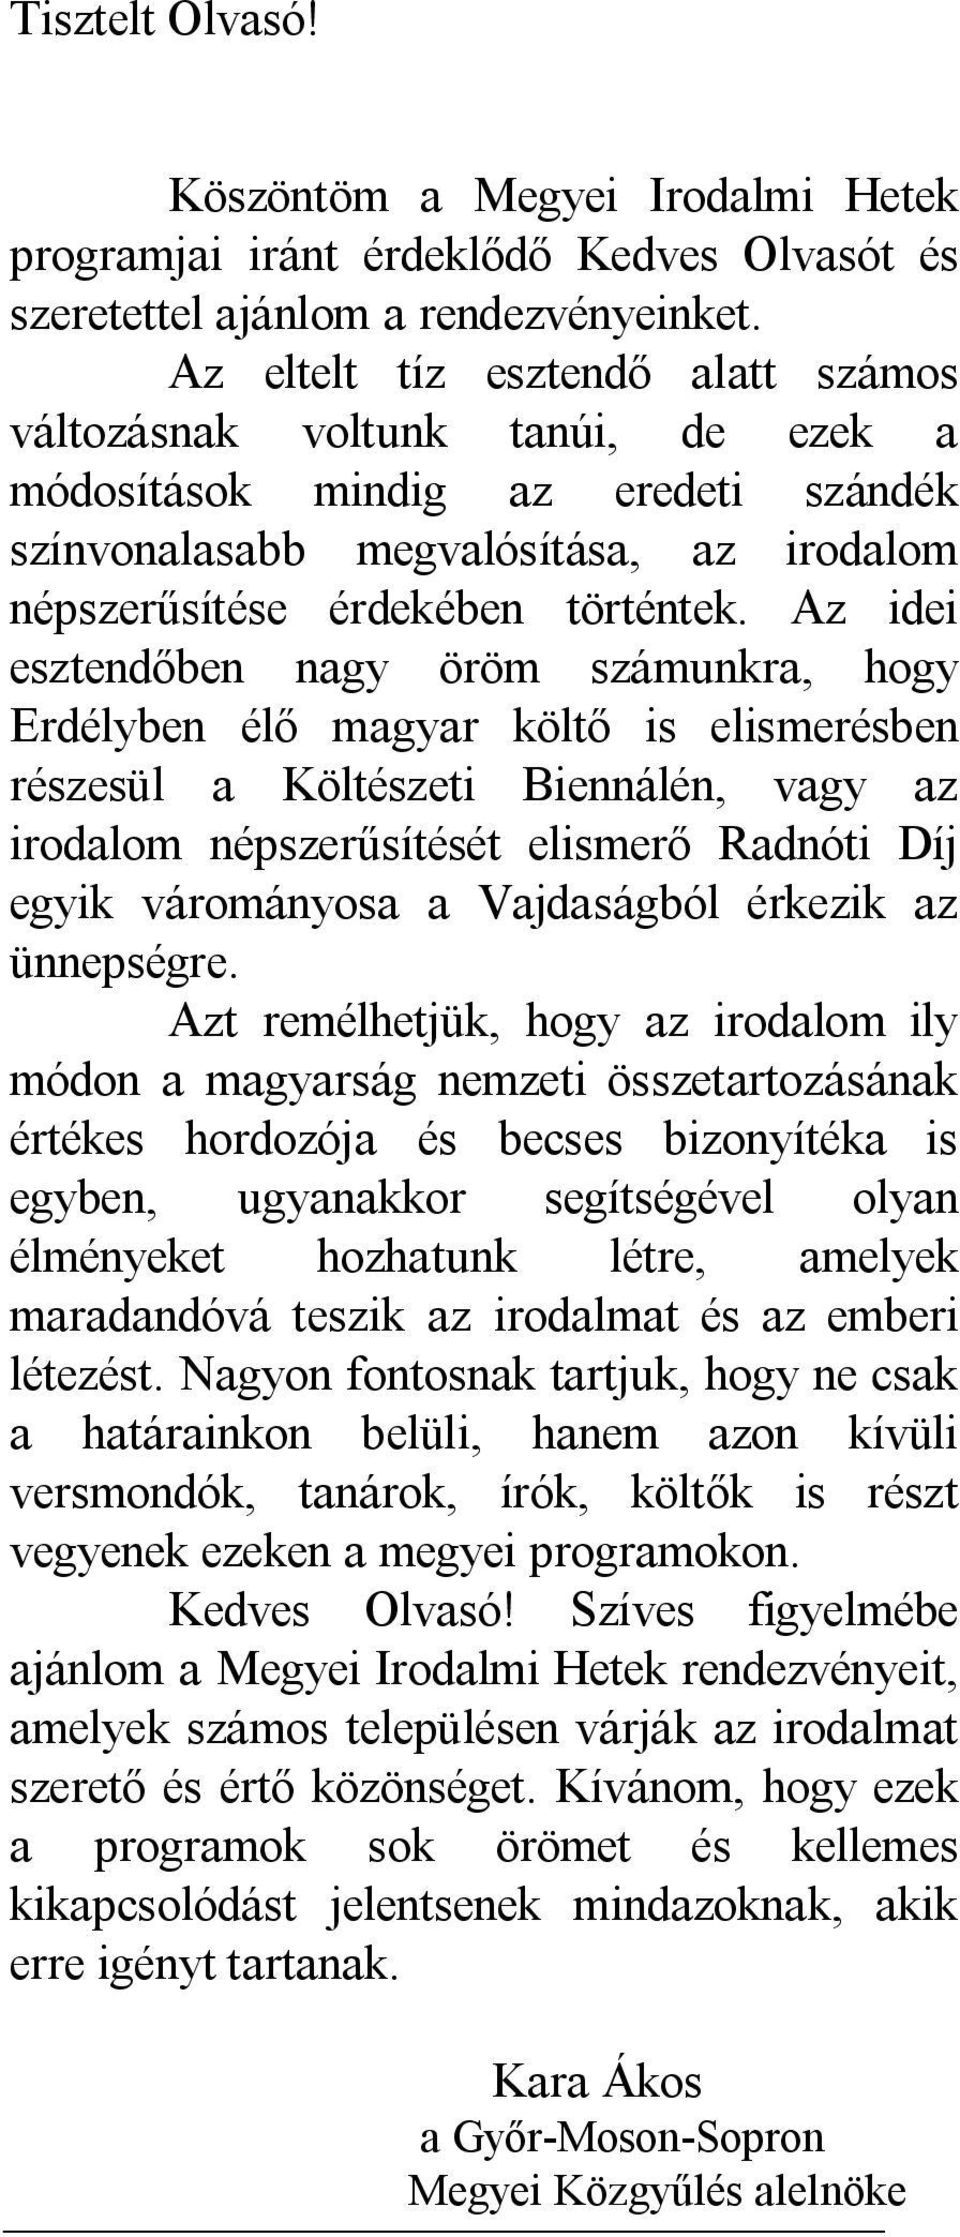 Az idei esztendőben nagy öröm számunkra, hogy Erdélyben élő magyar költő is elismerésben részesül a Költészeti Biennálén, vagy az irodalom népszerűsítését elismerő Radnóti Díj egyik várományosa a